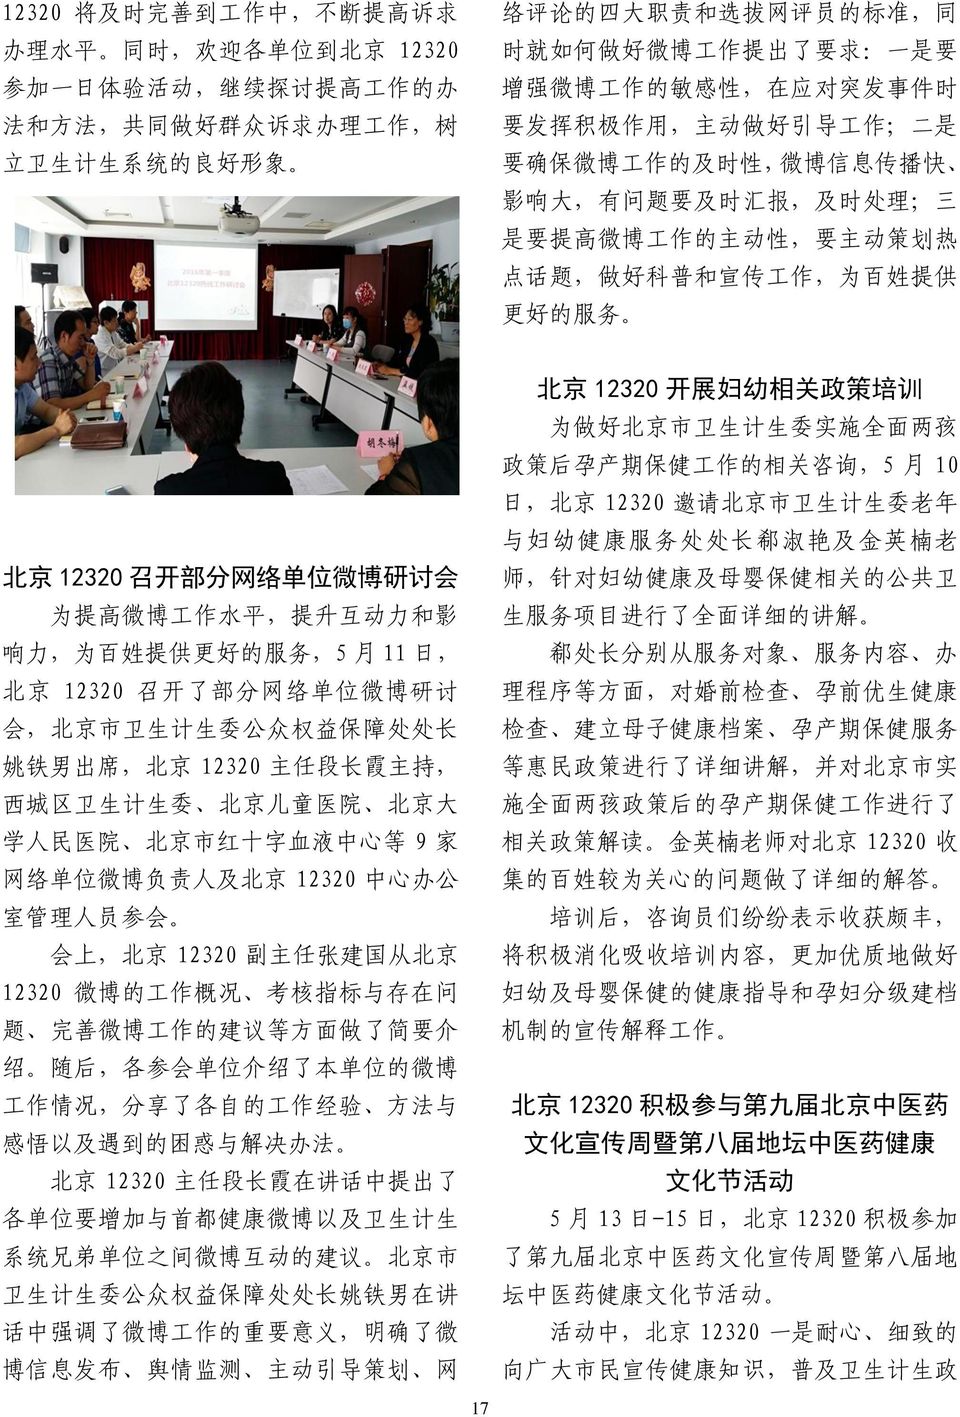 微 博 工 作 的 主 动 性, 要 主 动 策 划 热 点 话 题, 做 好 科 普 和 宣 传 工 作, 为 百 姓 提 供 更 好 的 服 务 北 京 12320 召 开 部 分 网 络 单 位 微 博 研 讨 会 为 提 高 微 博 工 作 水 平, 提 升 互 动 力 和 影 响 力, 为 百 姓 提 供 更 好 的 服 务,5 月 11 日, 北 京 12320 召 开 了 部 分